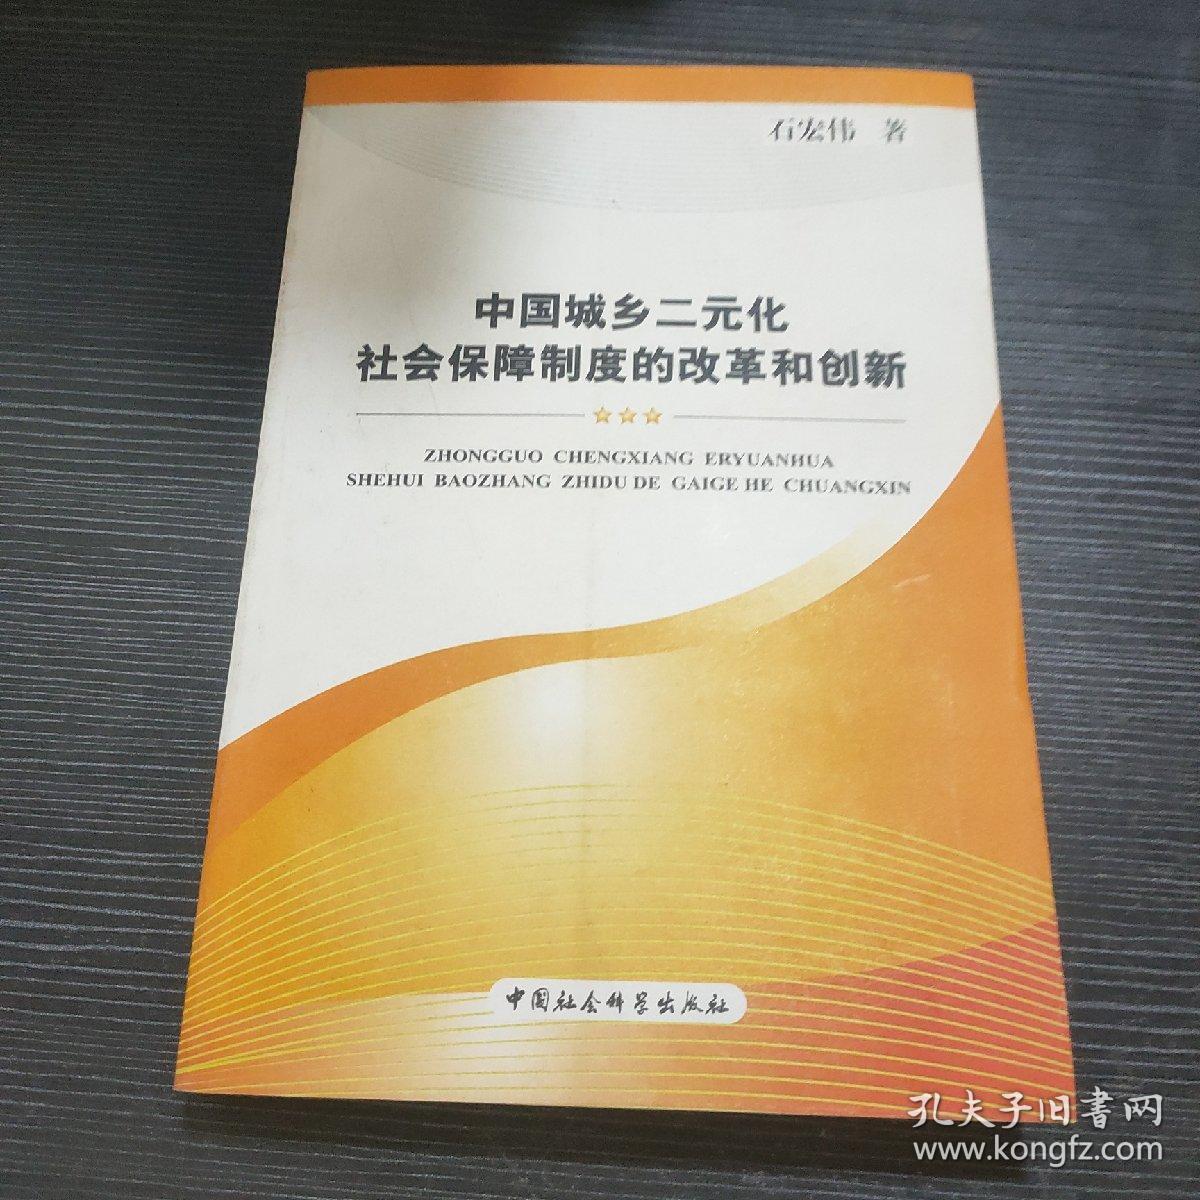 中国城乡二元化社会保障制度的改革和创新